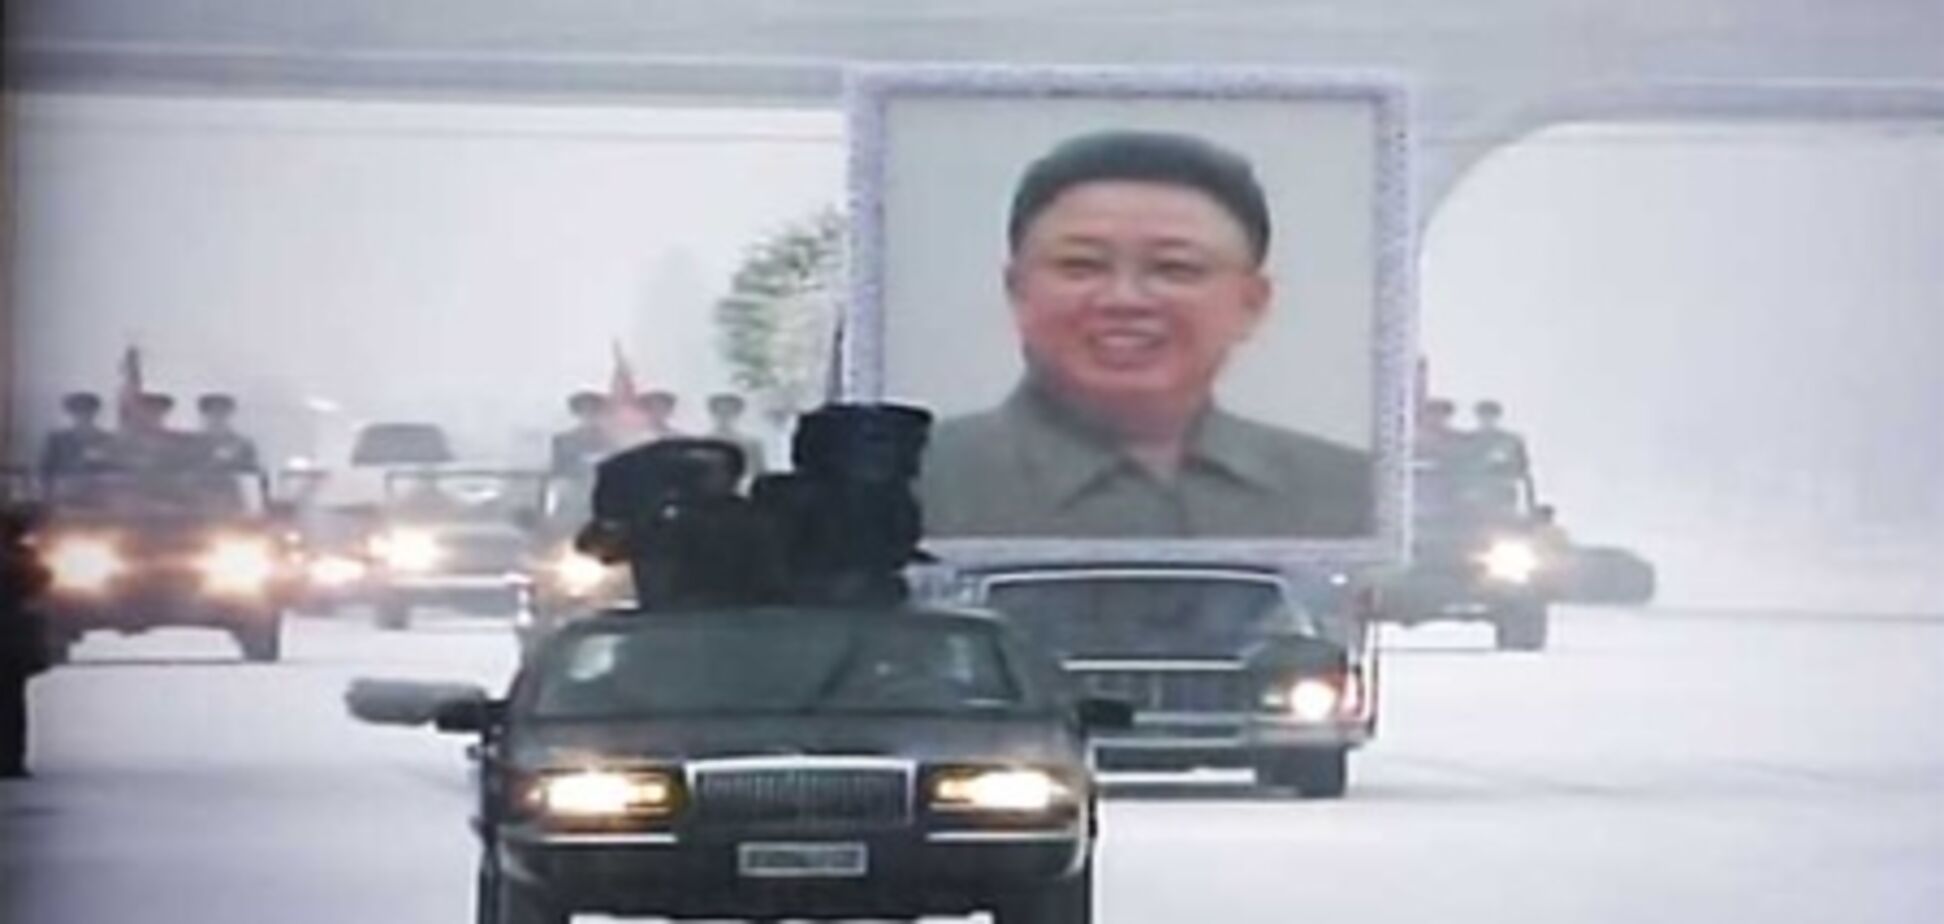 Похороны вождя: корейцы рыдают и пророчат Ким Чен Иру 'вечную жизнь'. Фото, видео